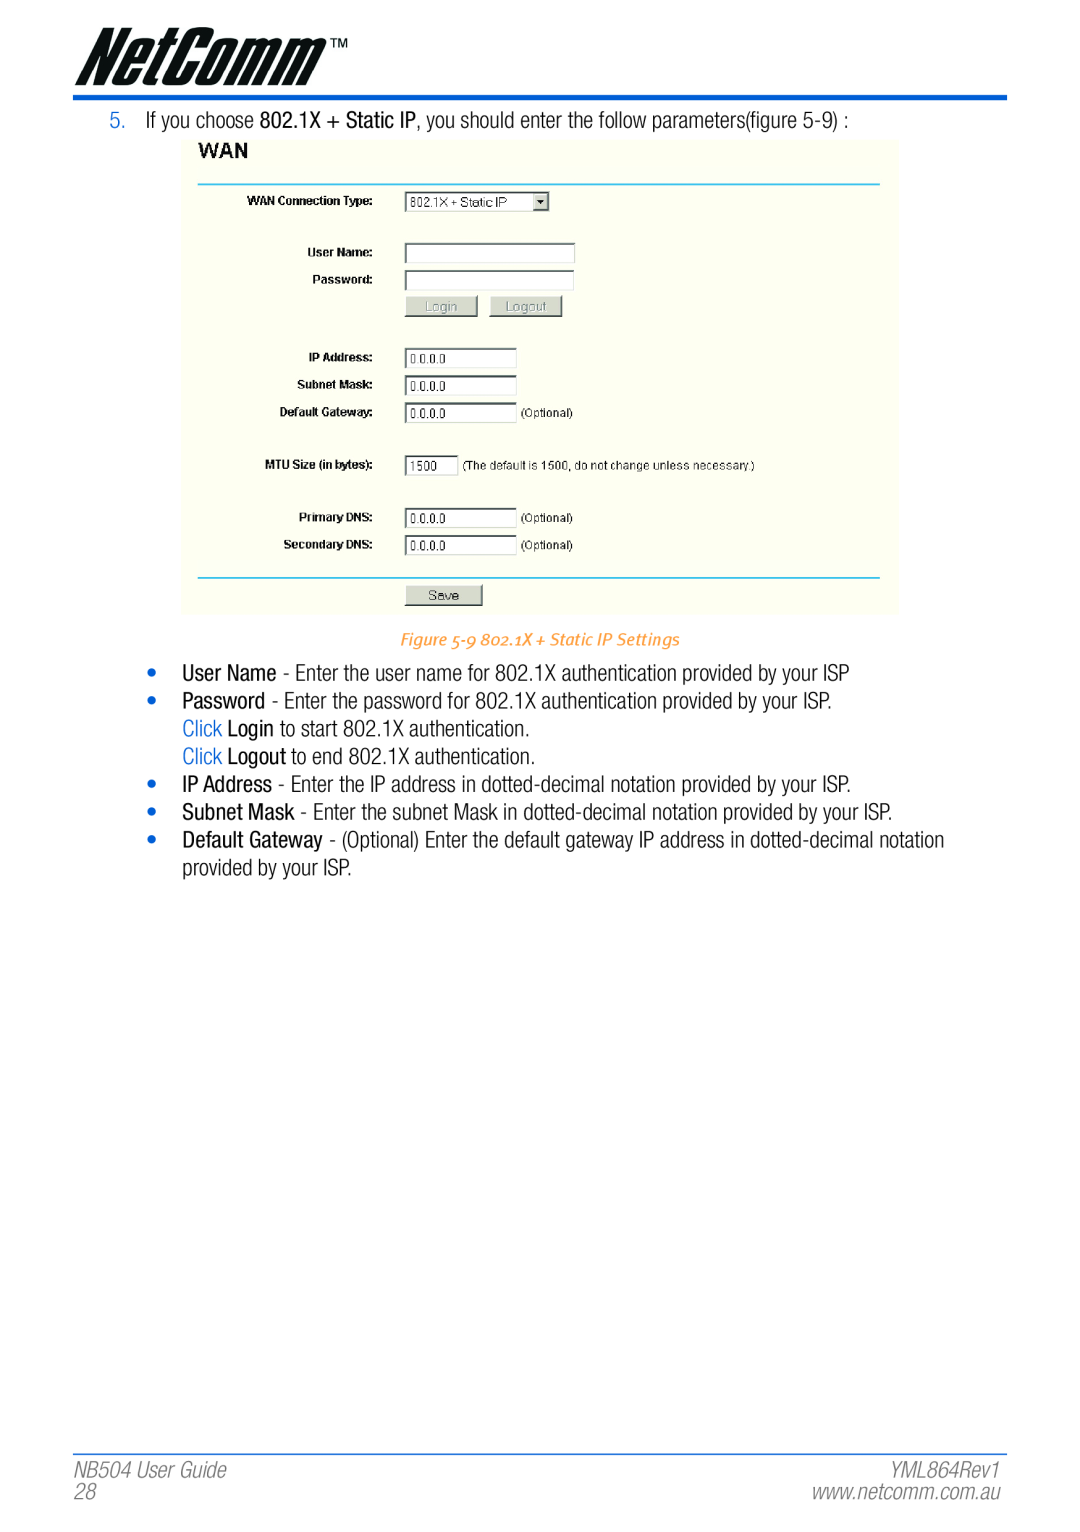 NetComm manual NB504 User Guide, 9 802.1X + Static IP Settings 